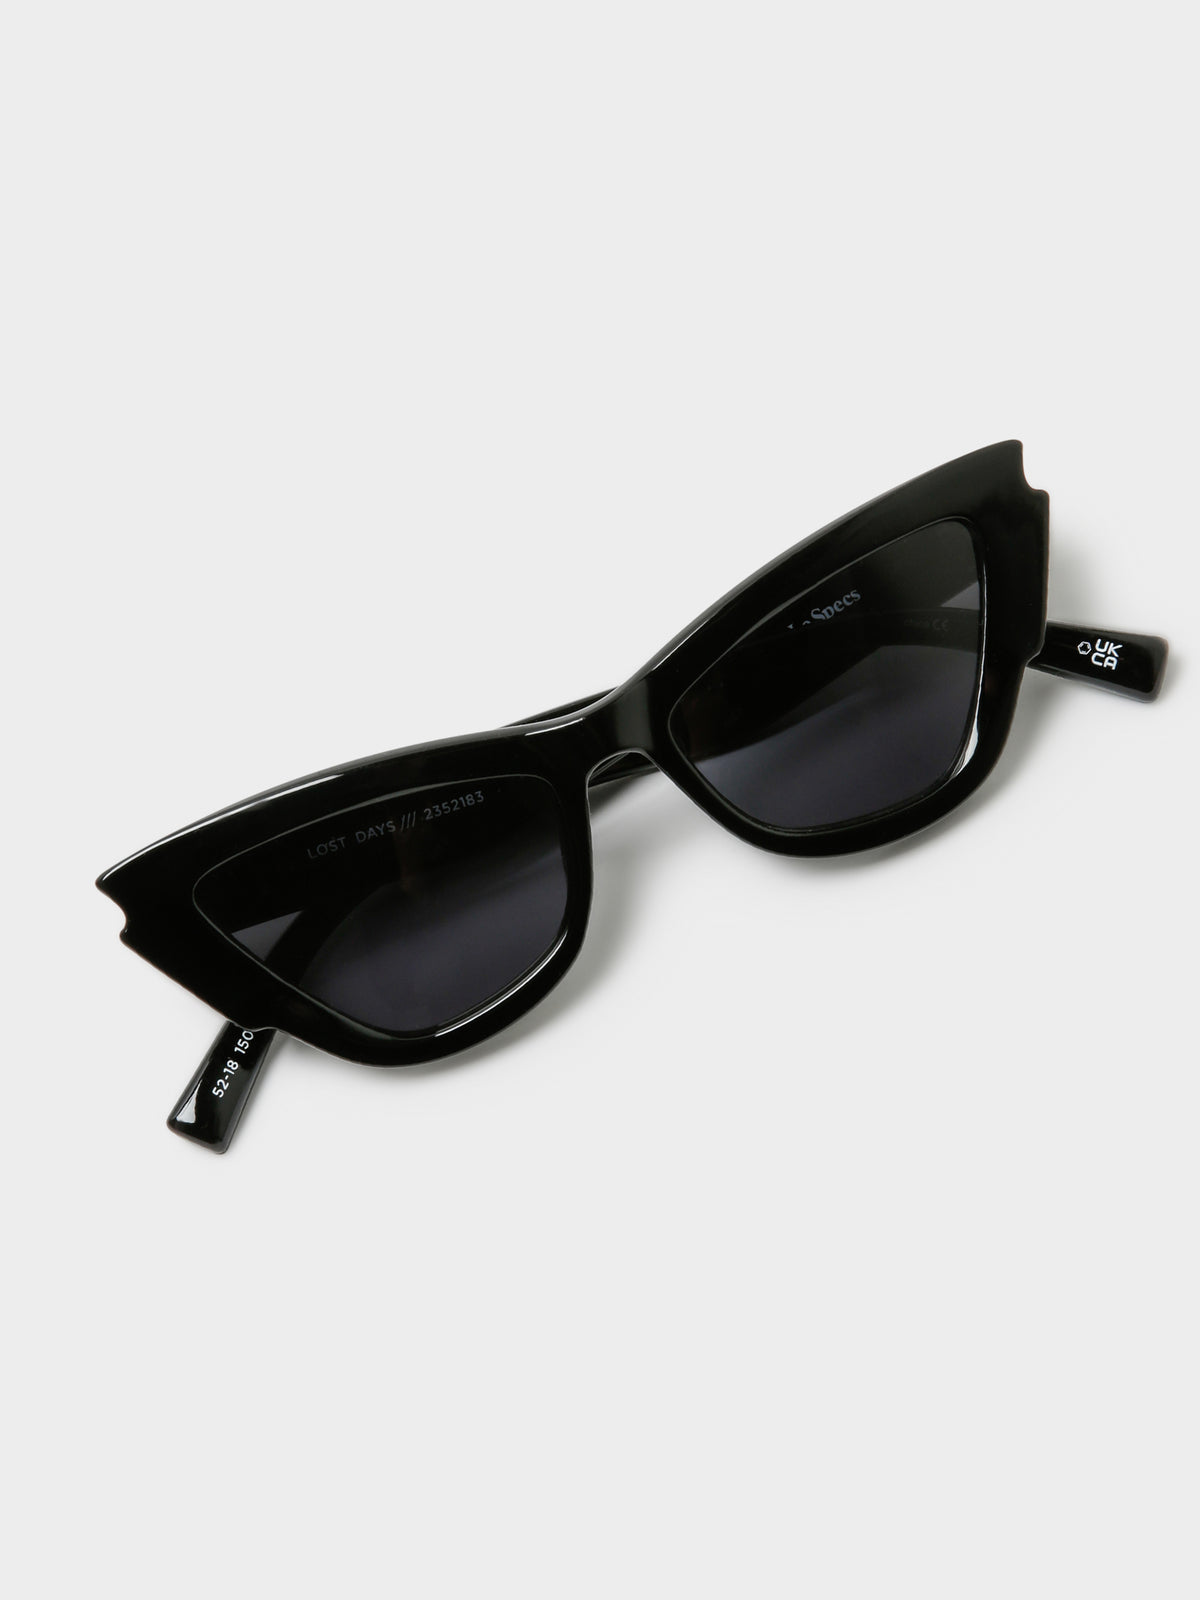 Lost Days Sunglasses in Black Smoke